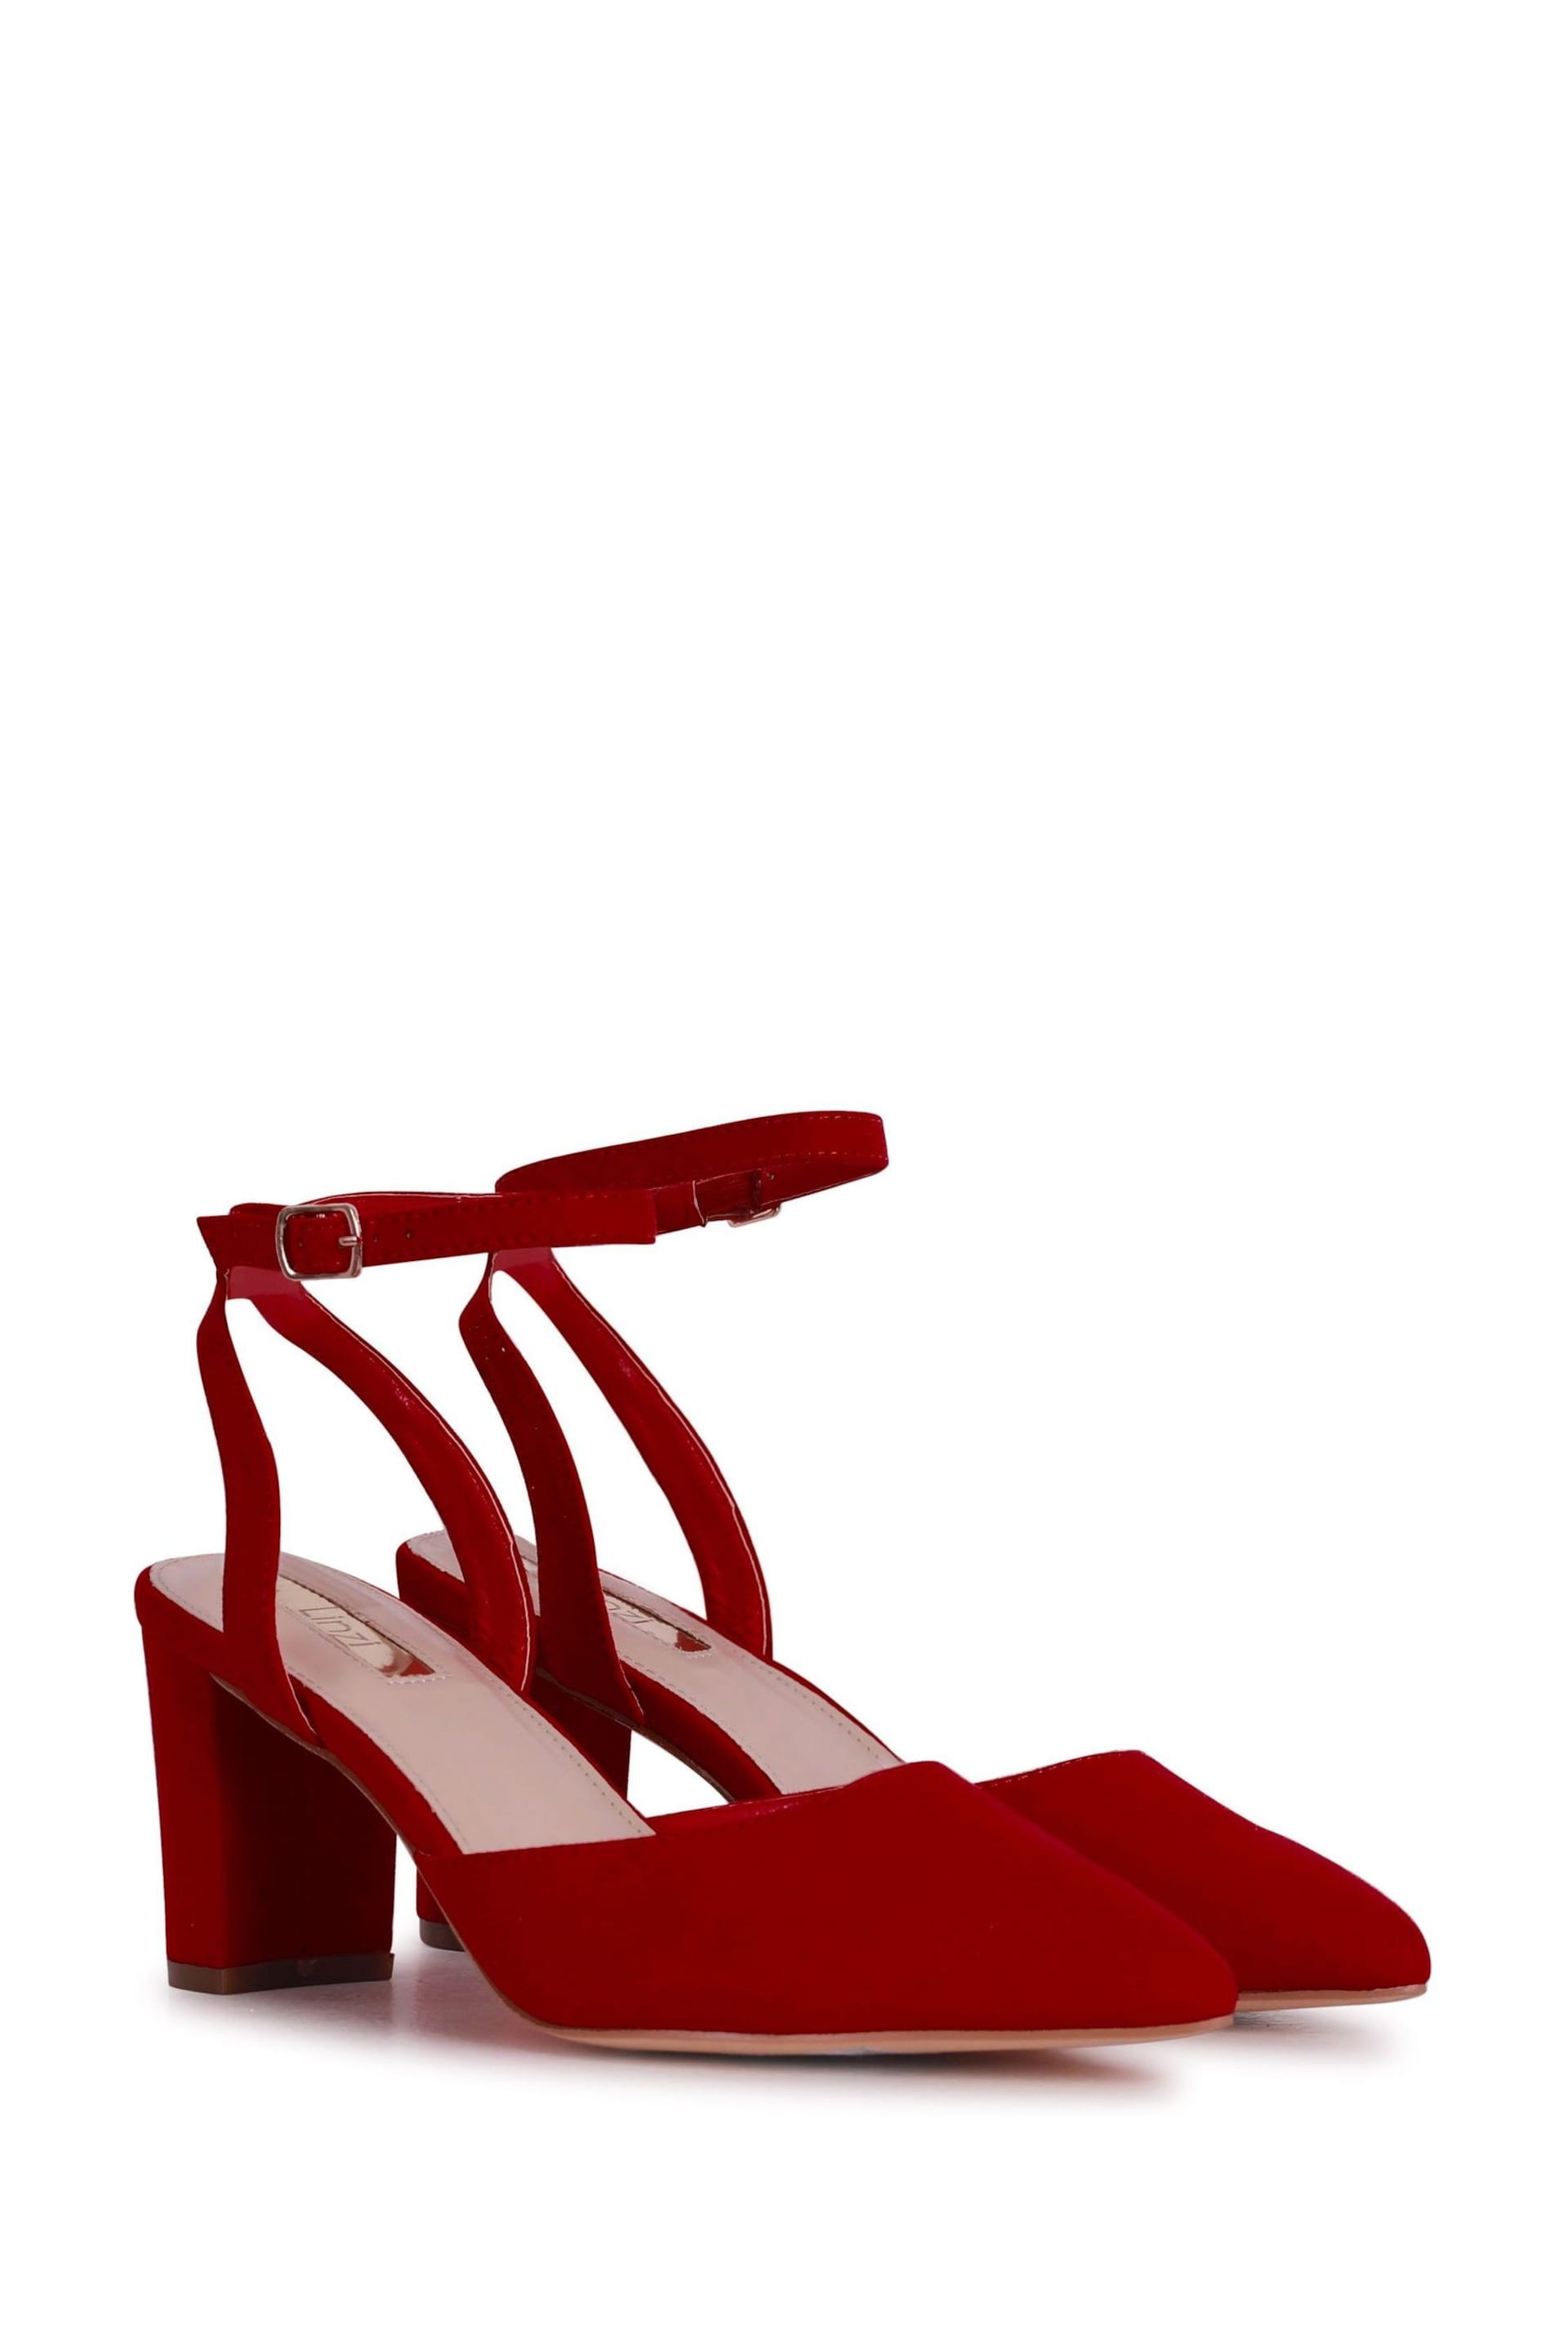 Linzi Red Carrie Open Back Court Block Heels - Image 3 of 4